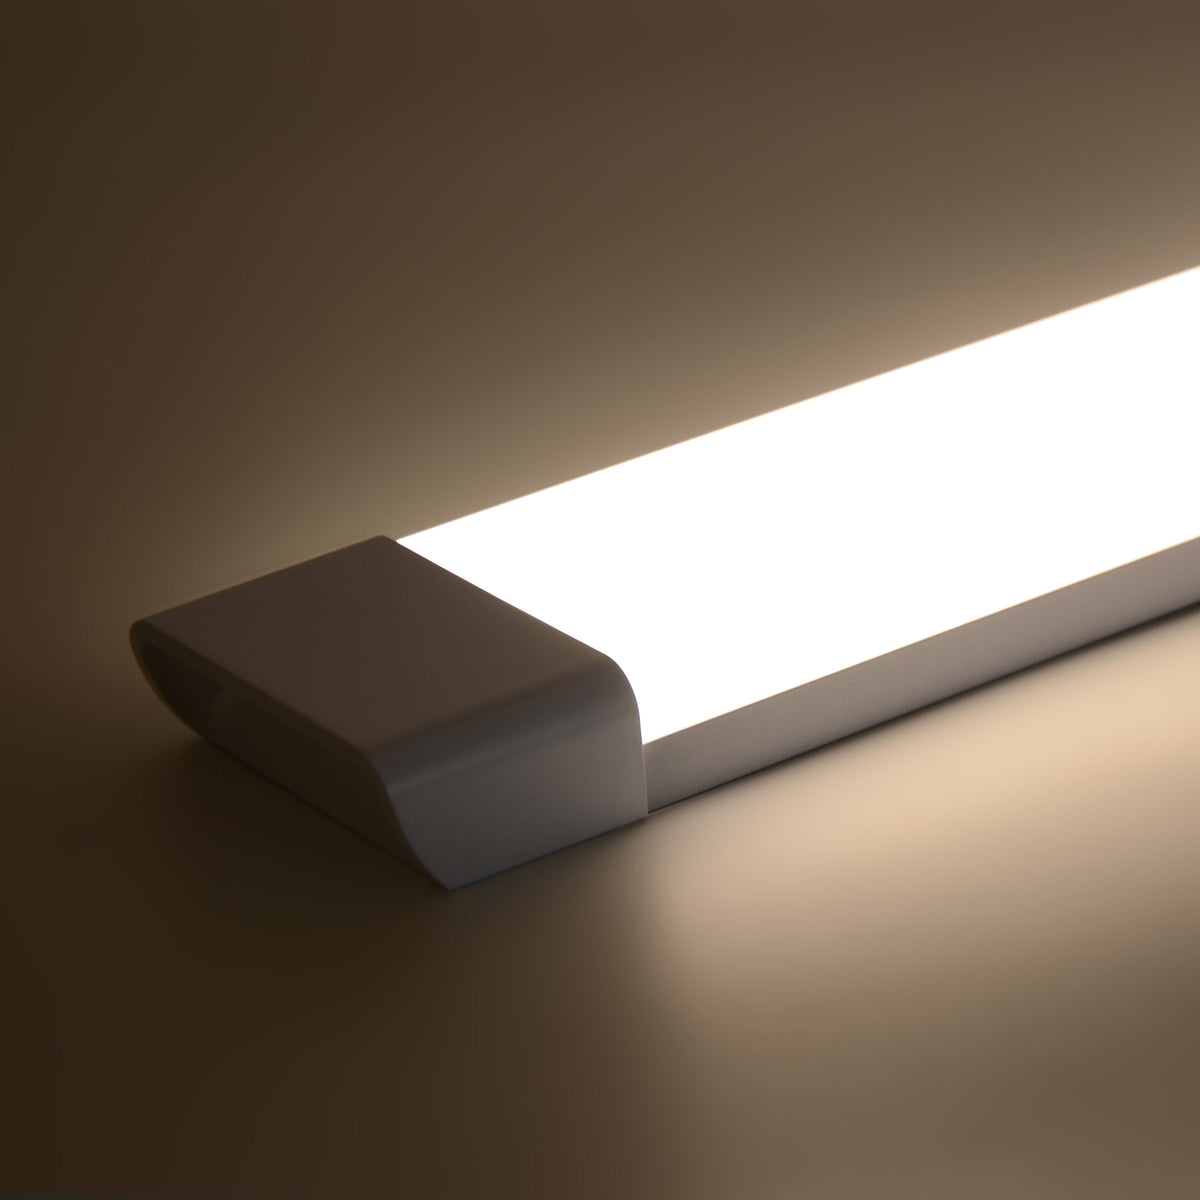 G.W.S. LED LED Batten Lights 1FT / Neutral White (4000K) / 1 LED Batten Light